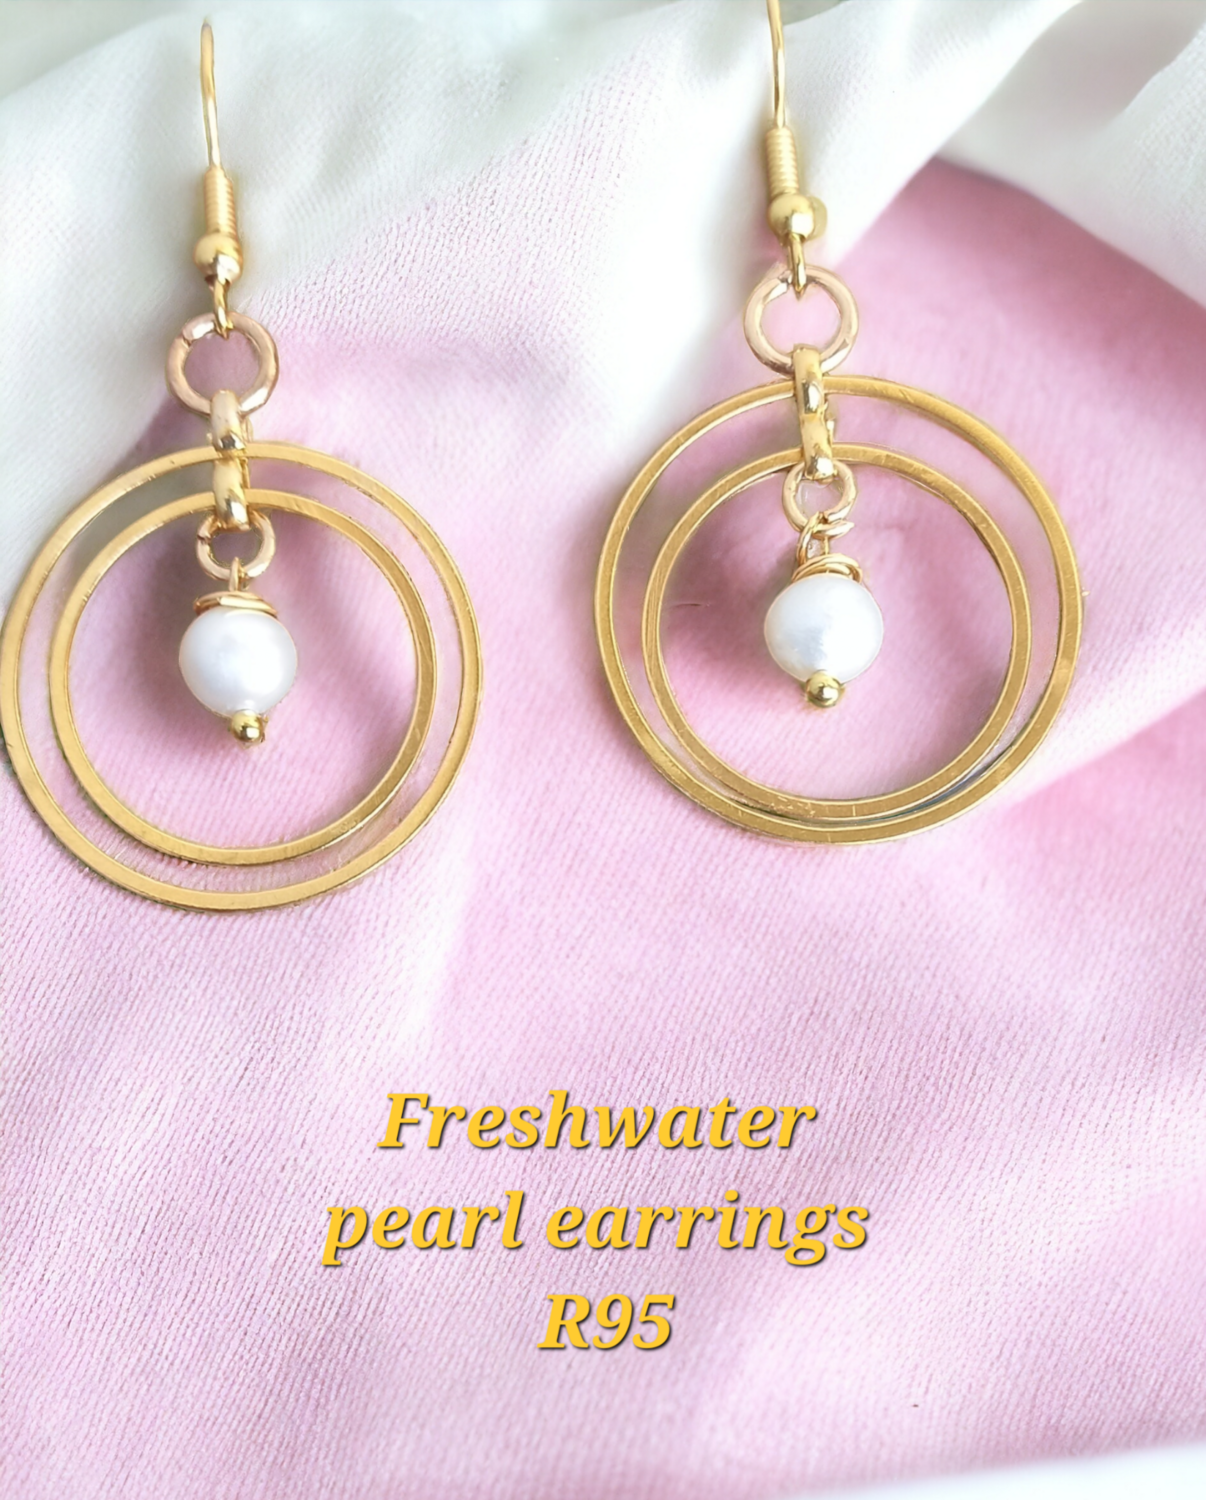 Fresh water pearls earrings 